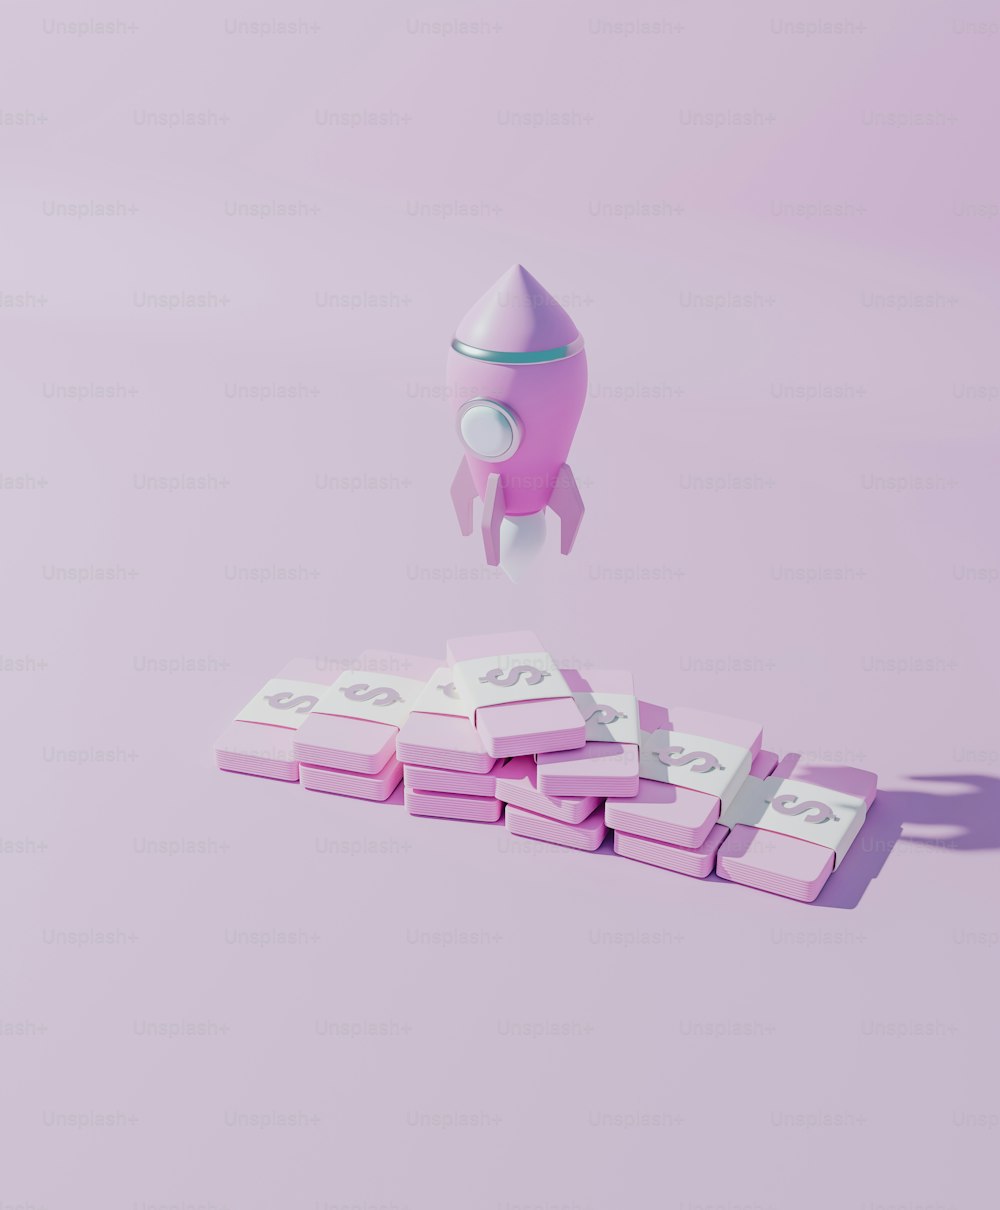 Um foguete de brinquedo está voando sobre uma pilha de blocos cor-de-rosa